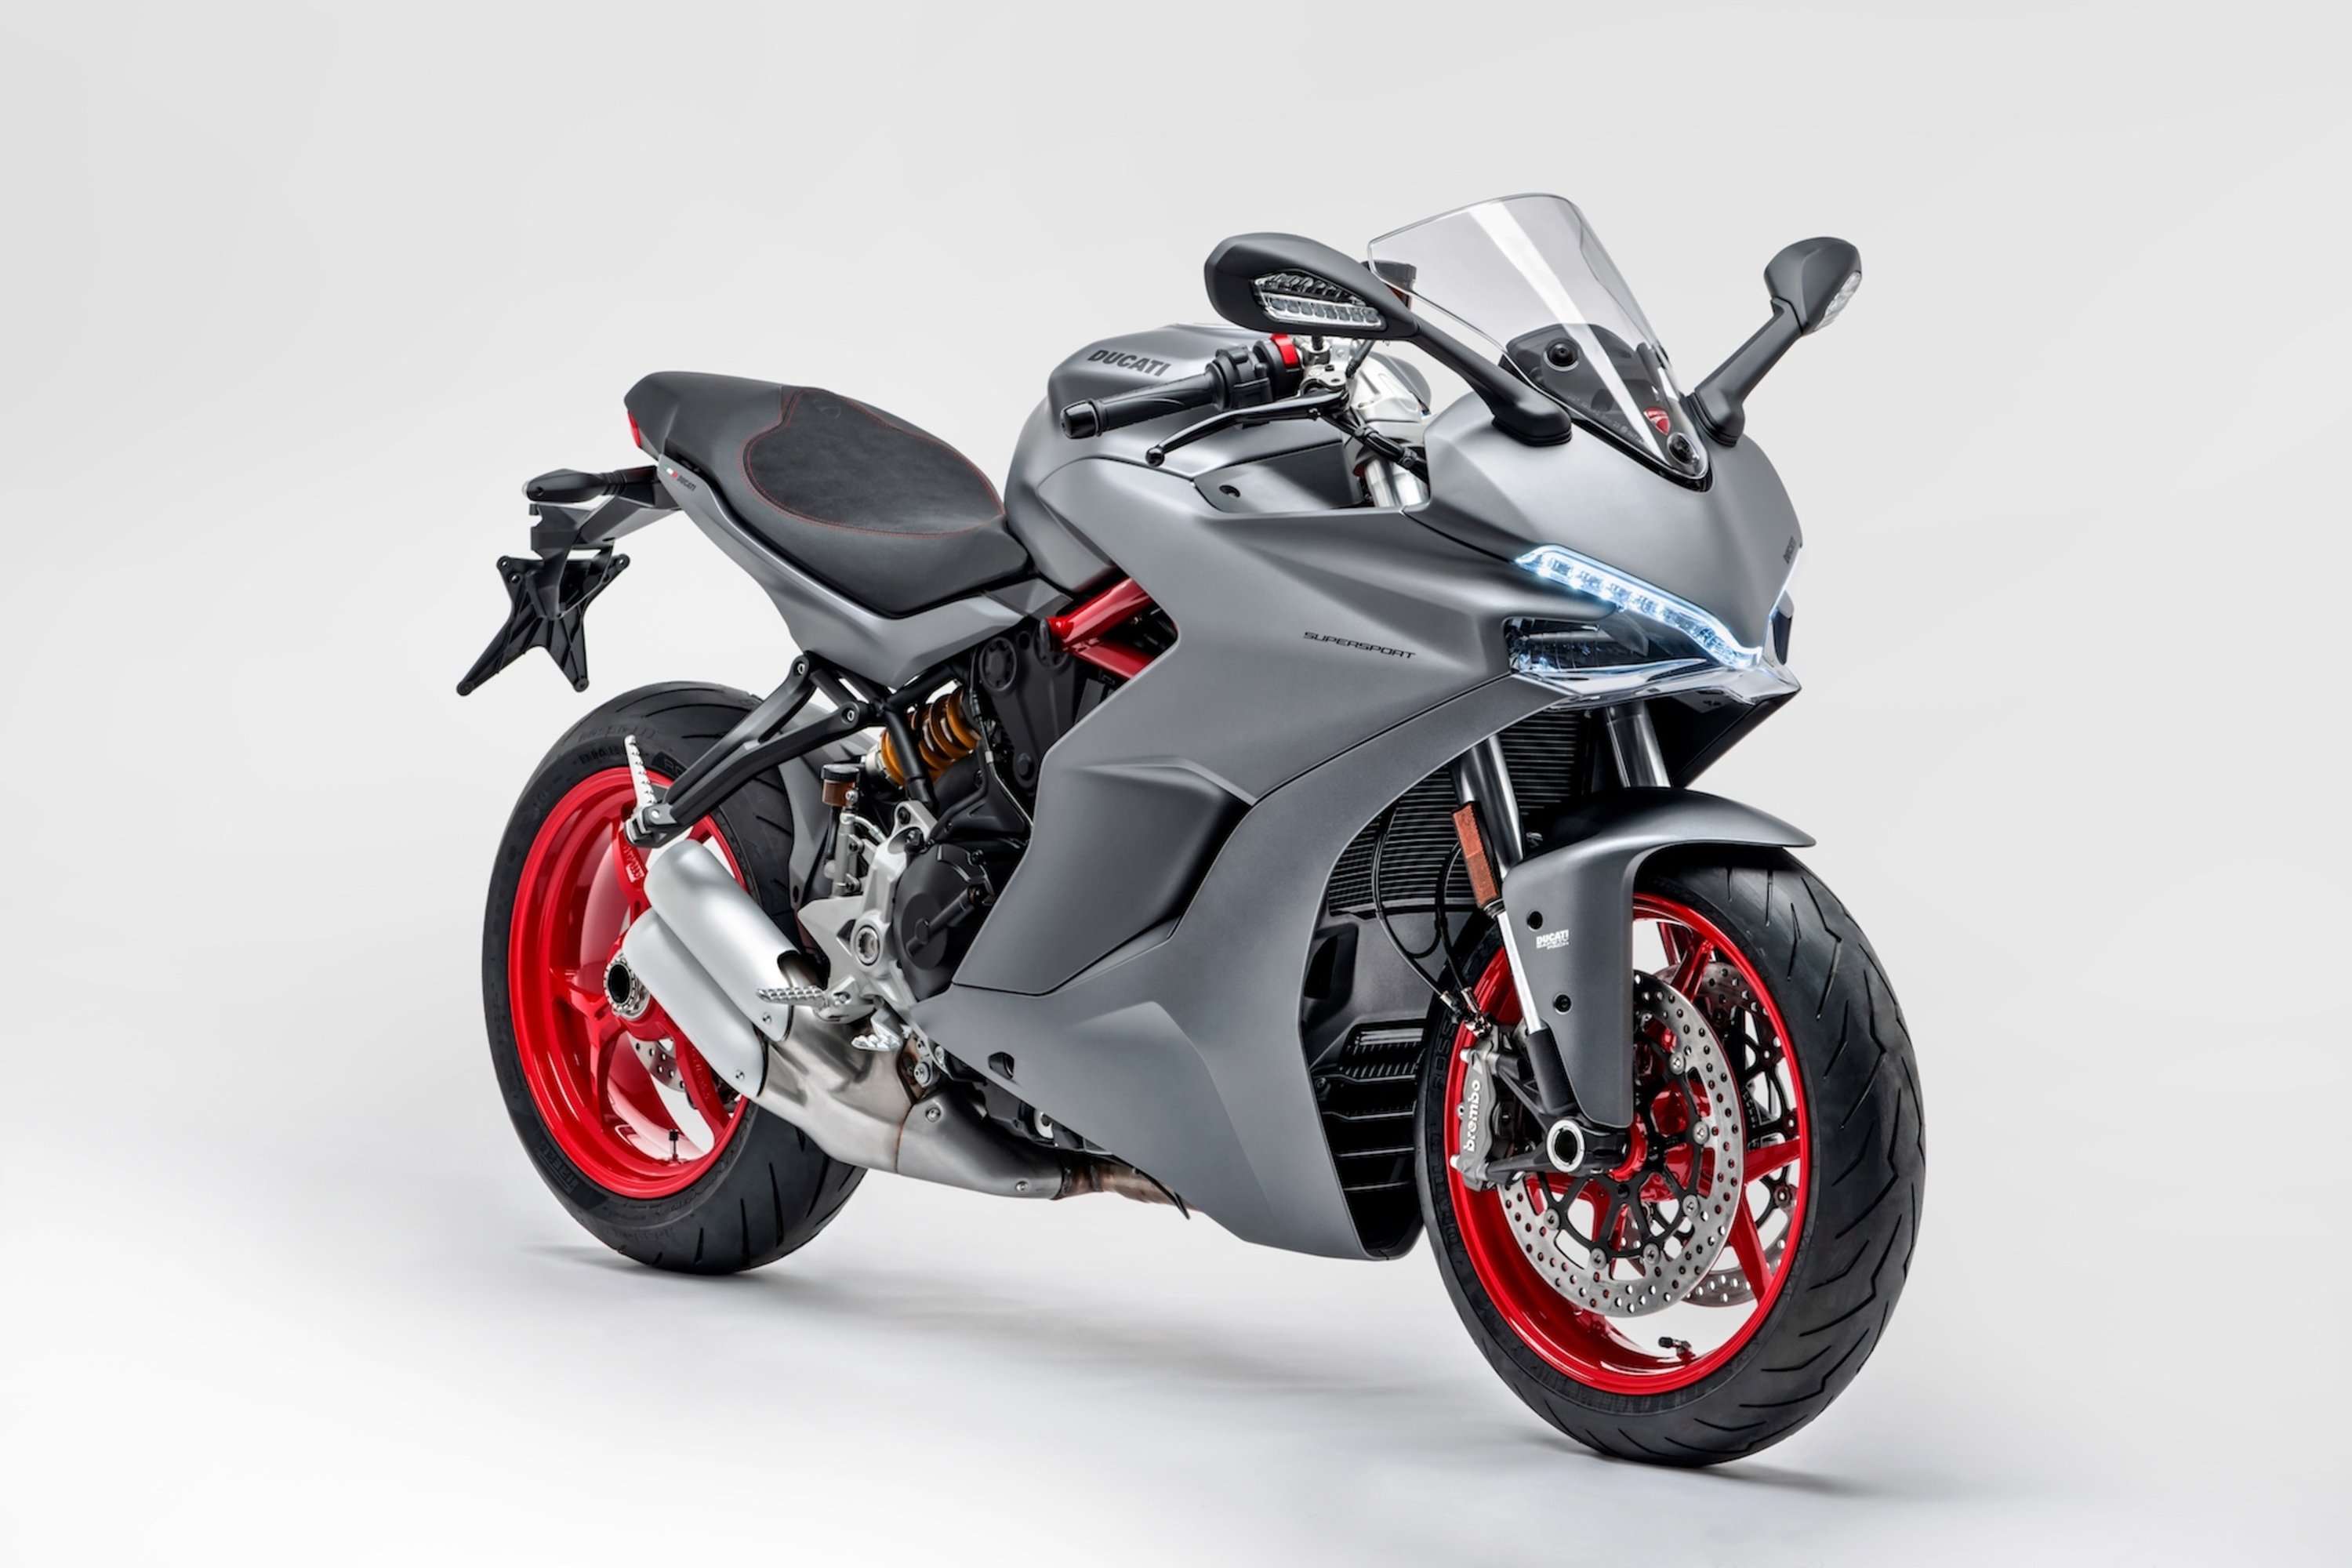 Nuova colorazione per la Ducati SuperSport 